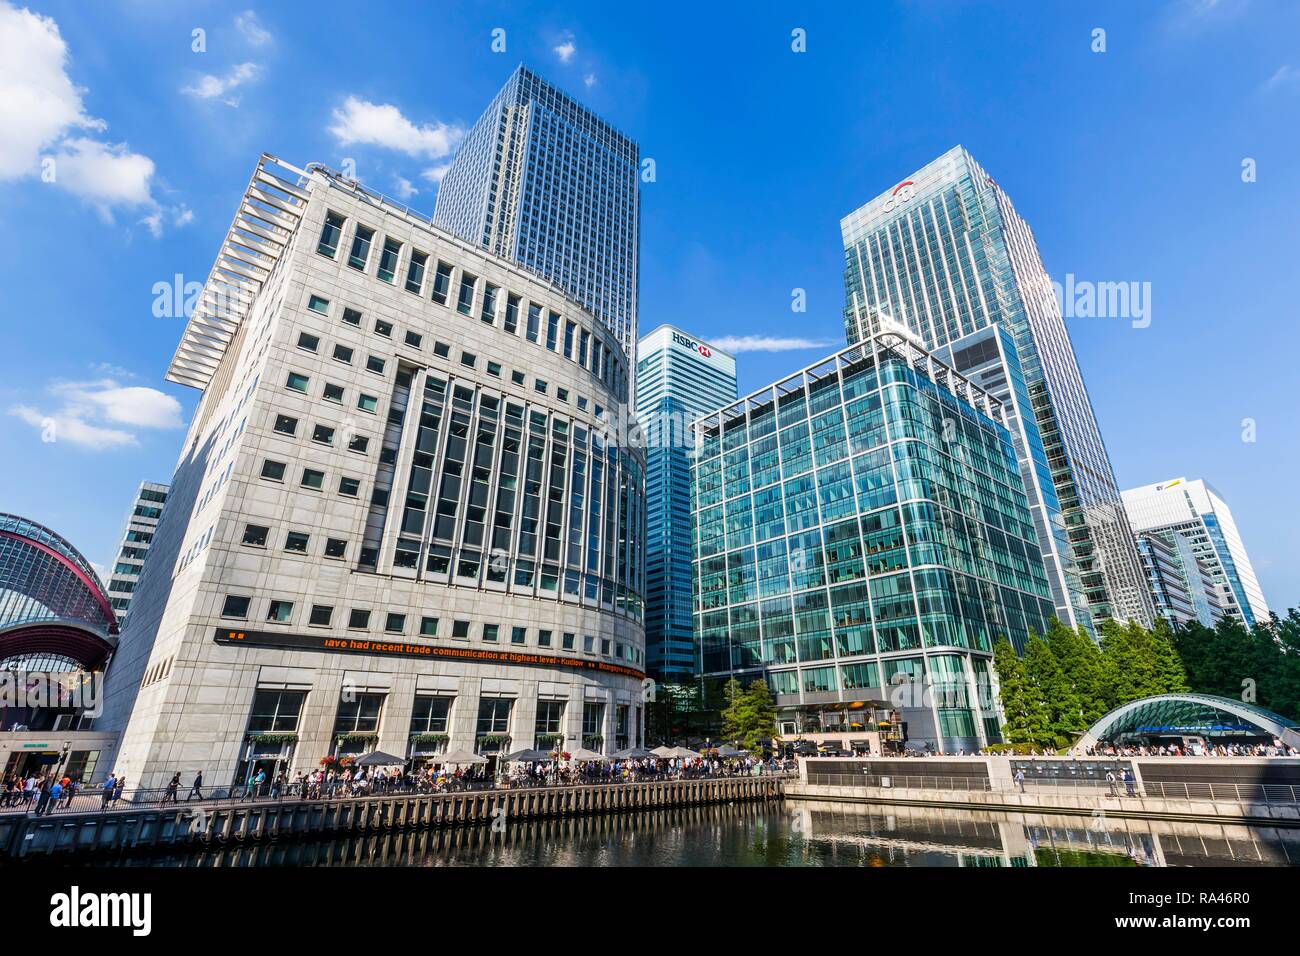 Thomson Reuters News Agency sede, Canary Wharf Tower, Citi Bank Headquarters Citigroup centro e quartieri generali della banca HSBC Foto Stock